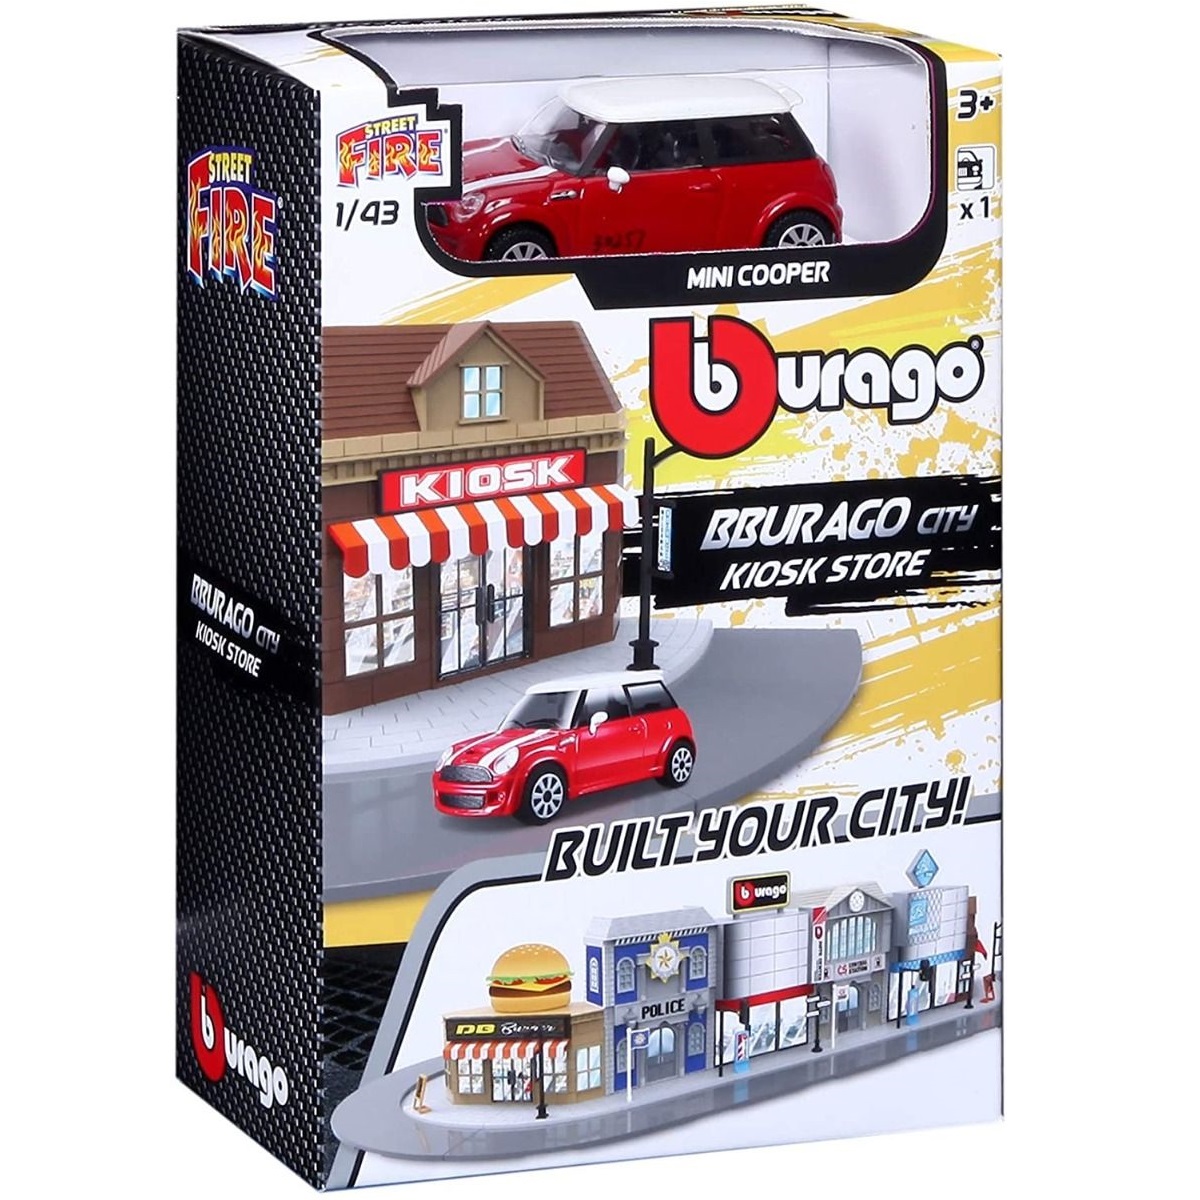 Игровой набор BBURAGO Магазин-киоск с металлической машинкой, 1:43, красный, 18-31506 игровой набор bburago city pharmacy 1 43 18 31511